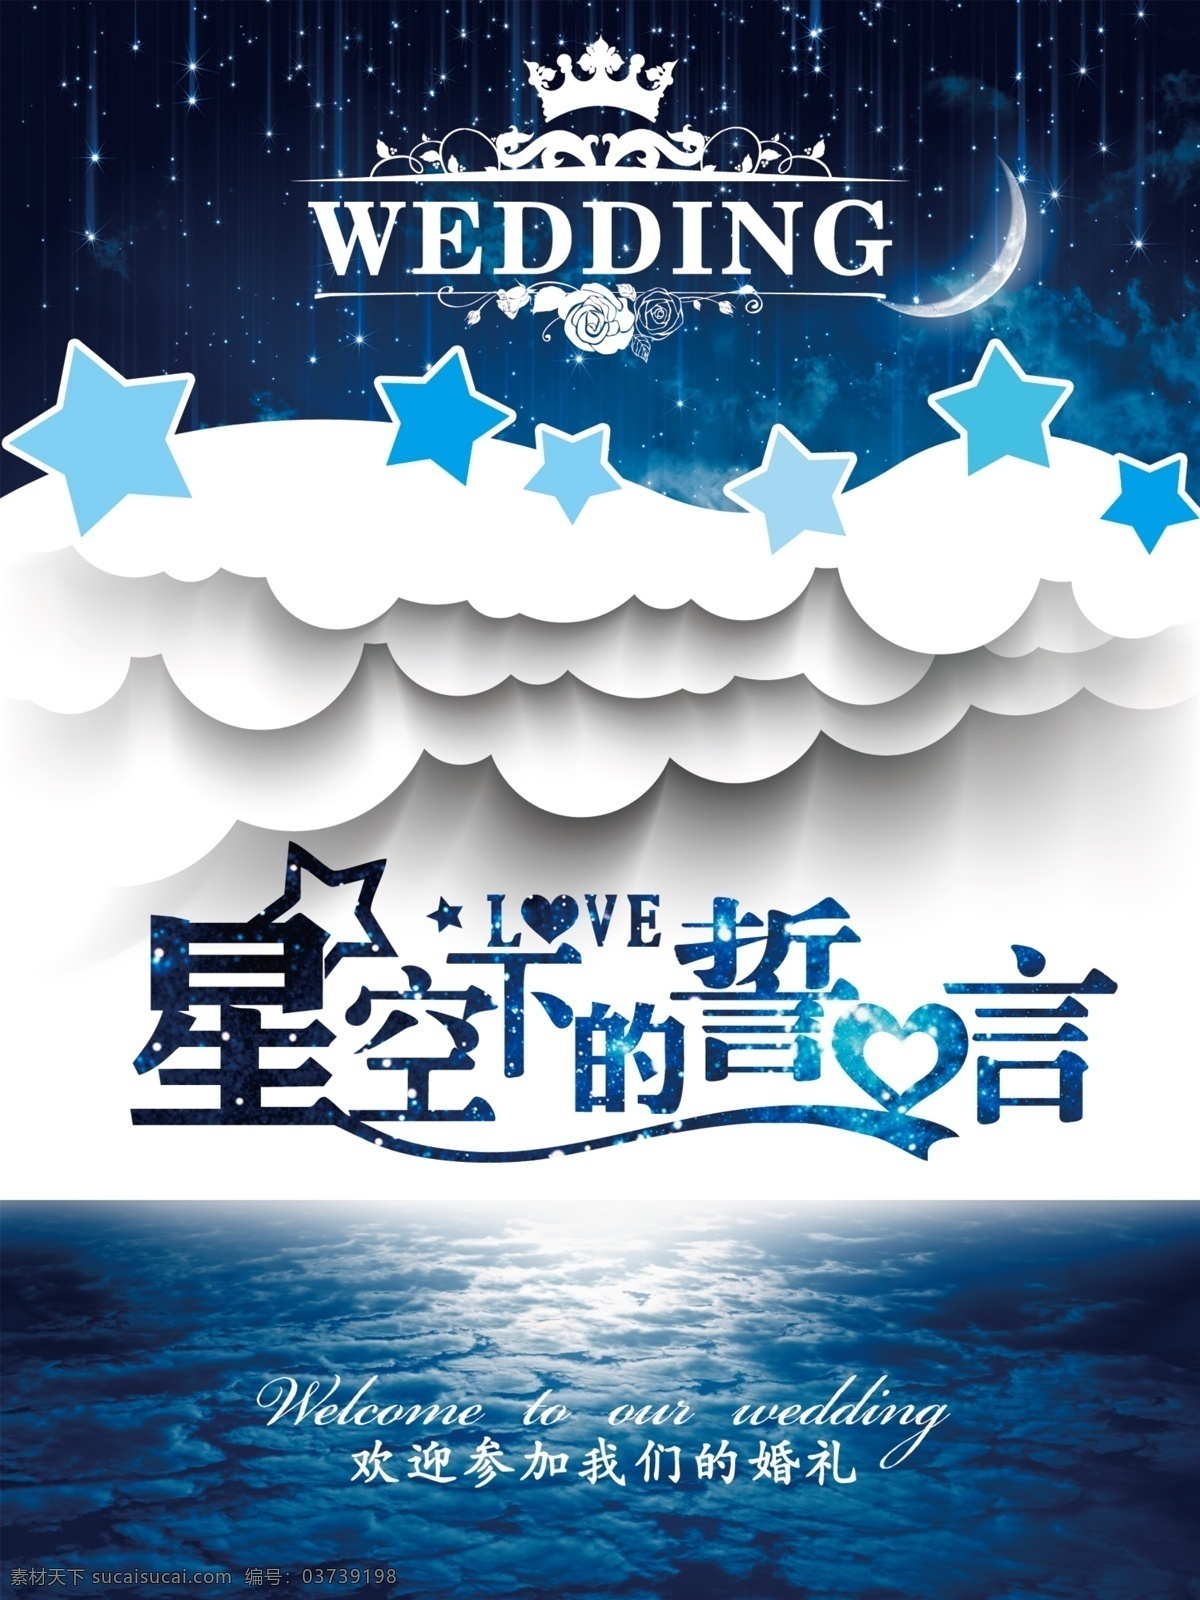 星空下的誓言 婚礼logo 花纹 艺术字 字体造型 文字美化 婚礼 婚庆 字体 星空 唯美海报